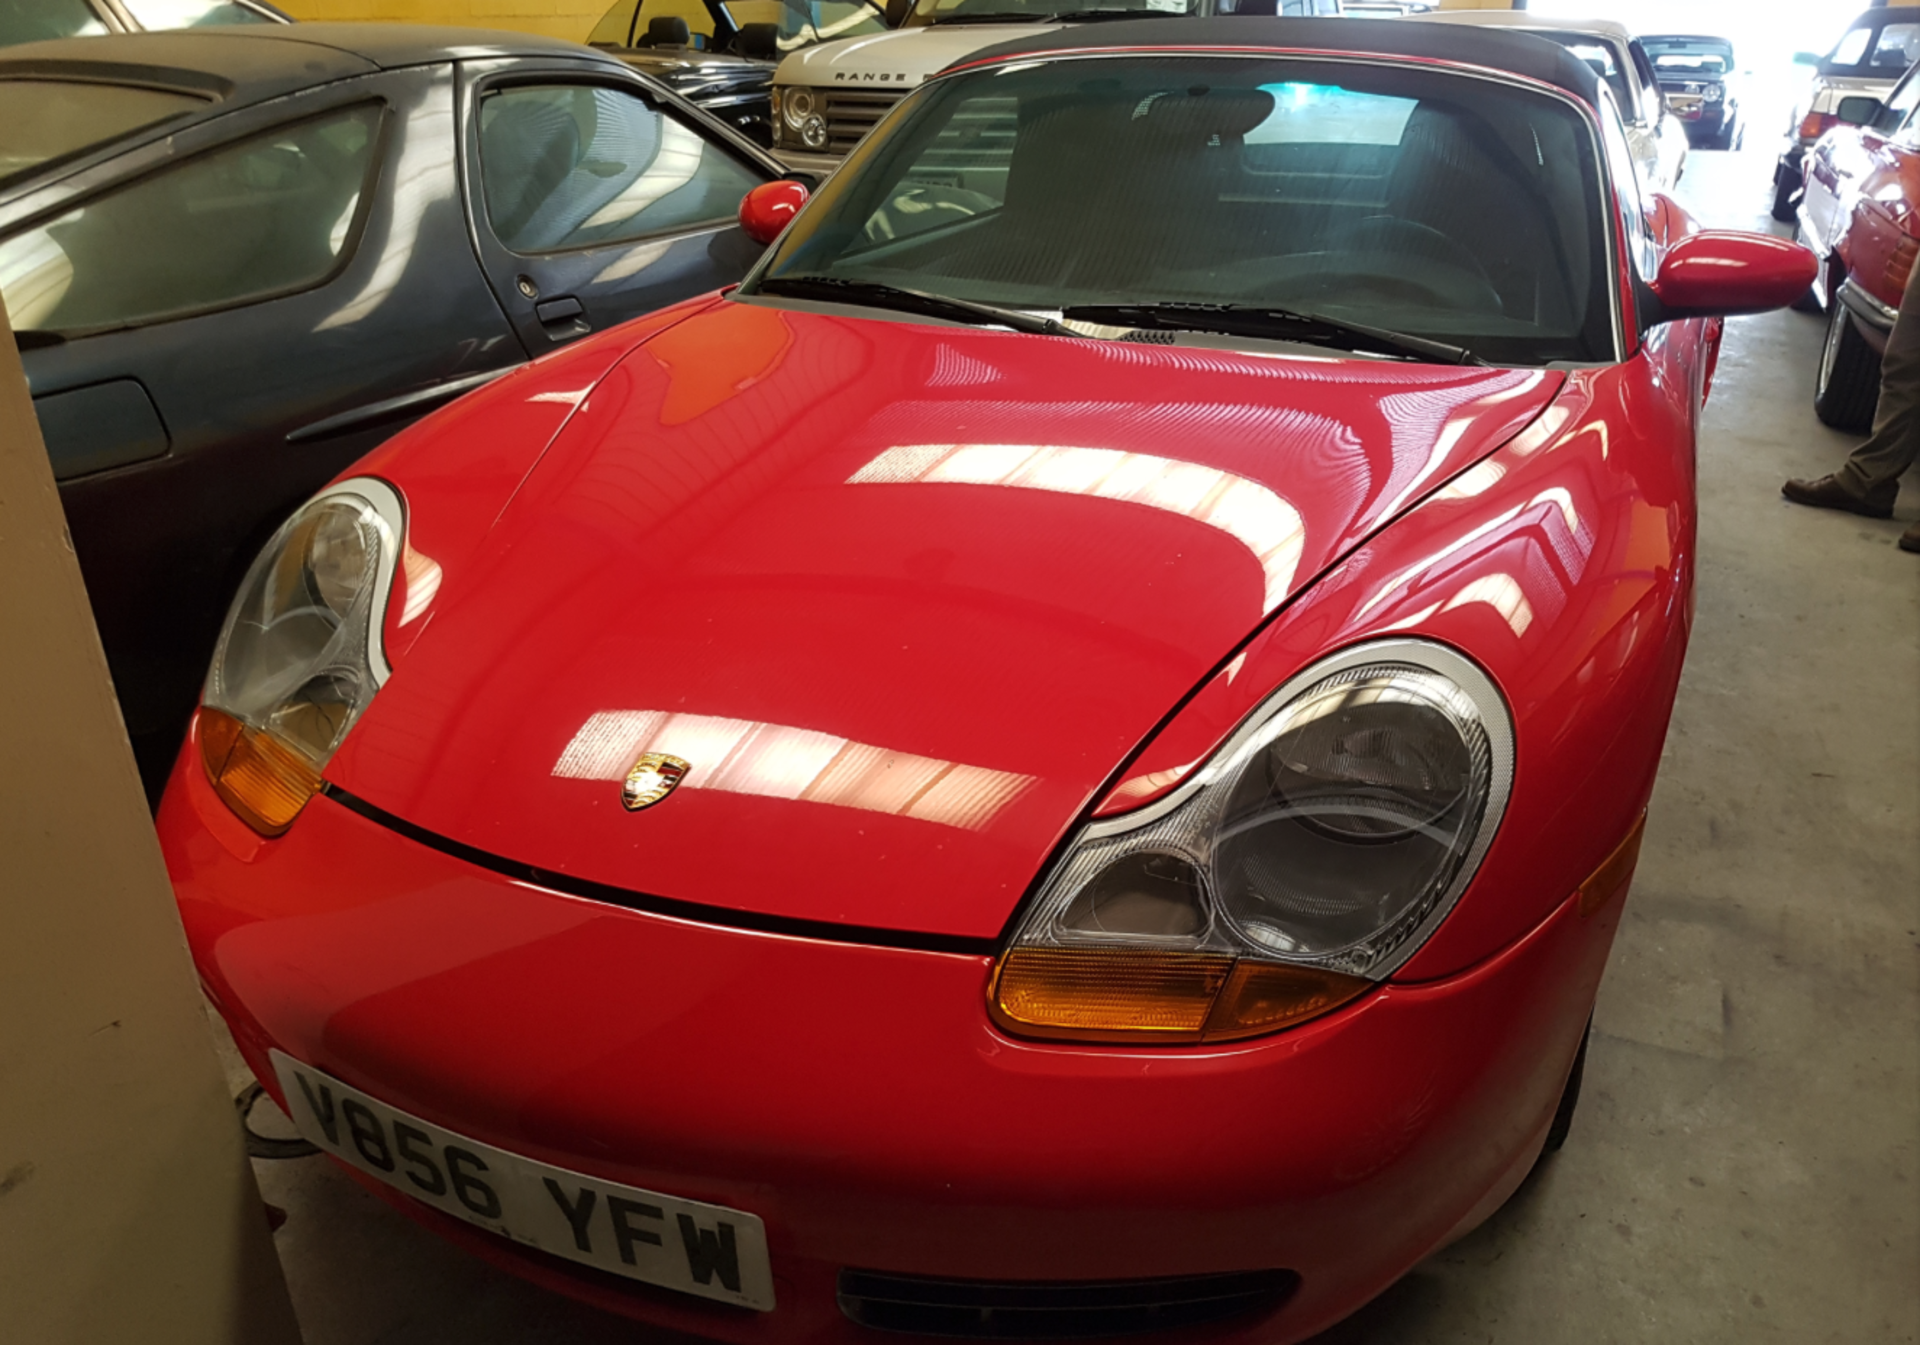 1999 Porsche Boxter (LHD) on UK Plates